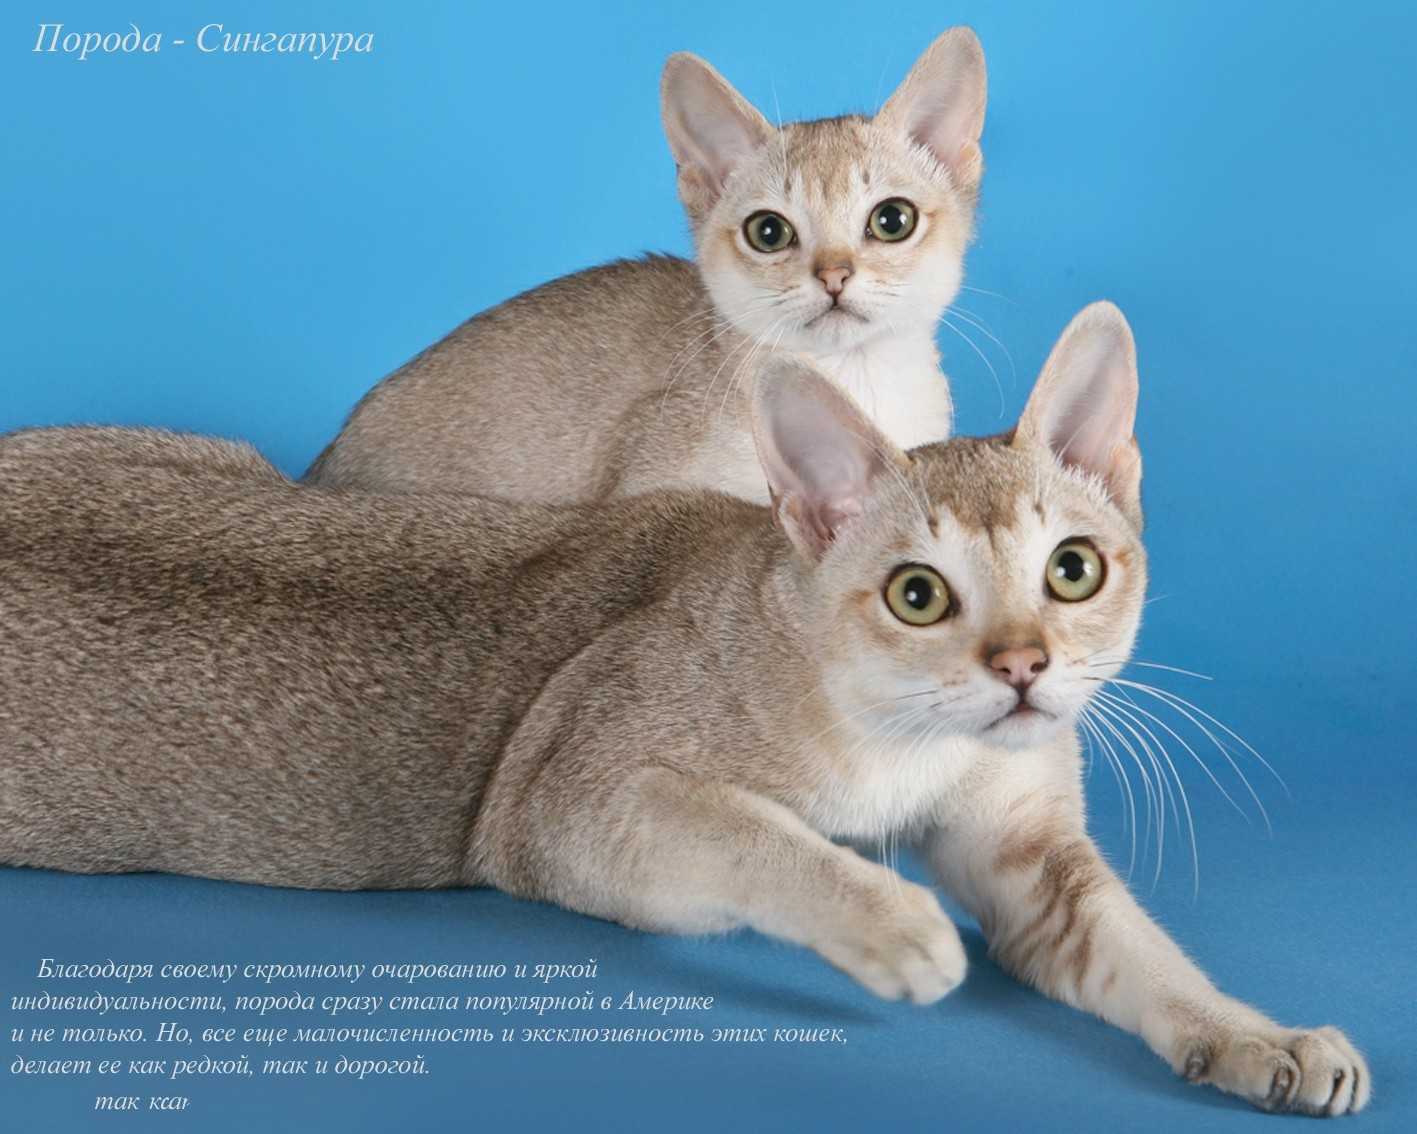 Бразильская короткошерстная кошка — описание породы, уход и содержание